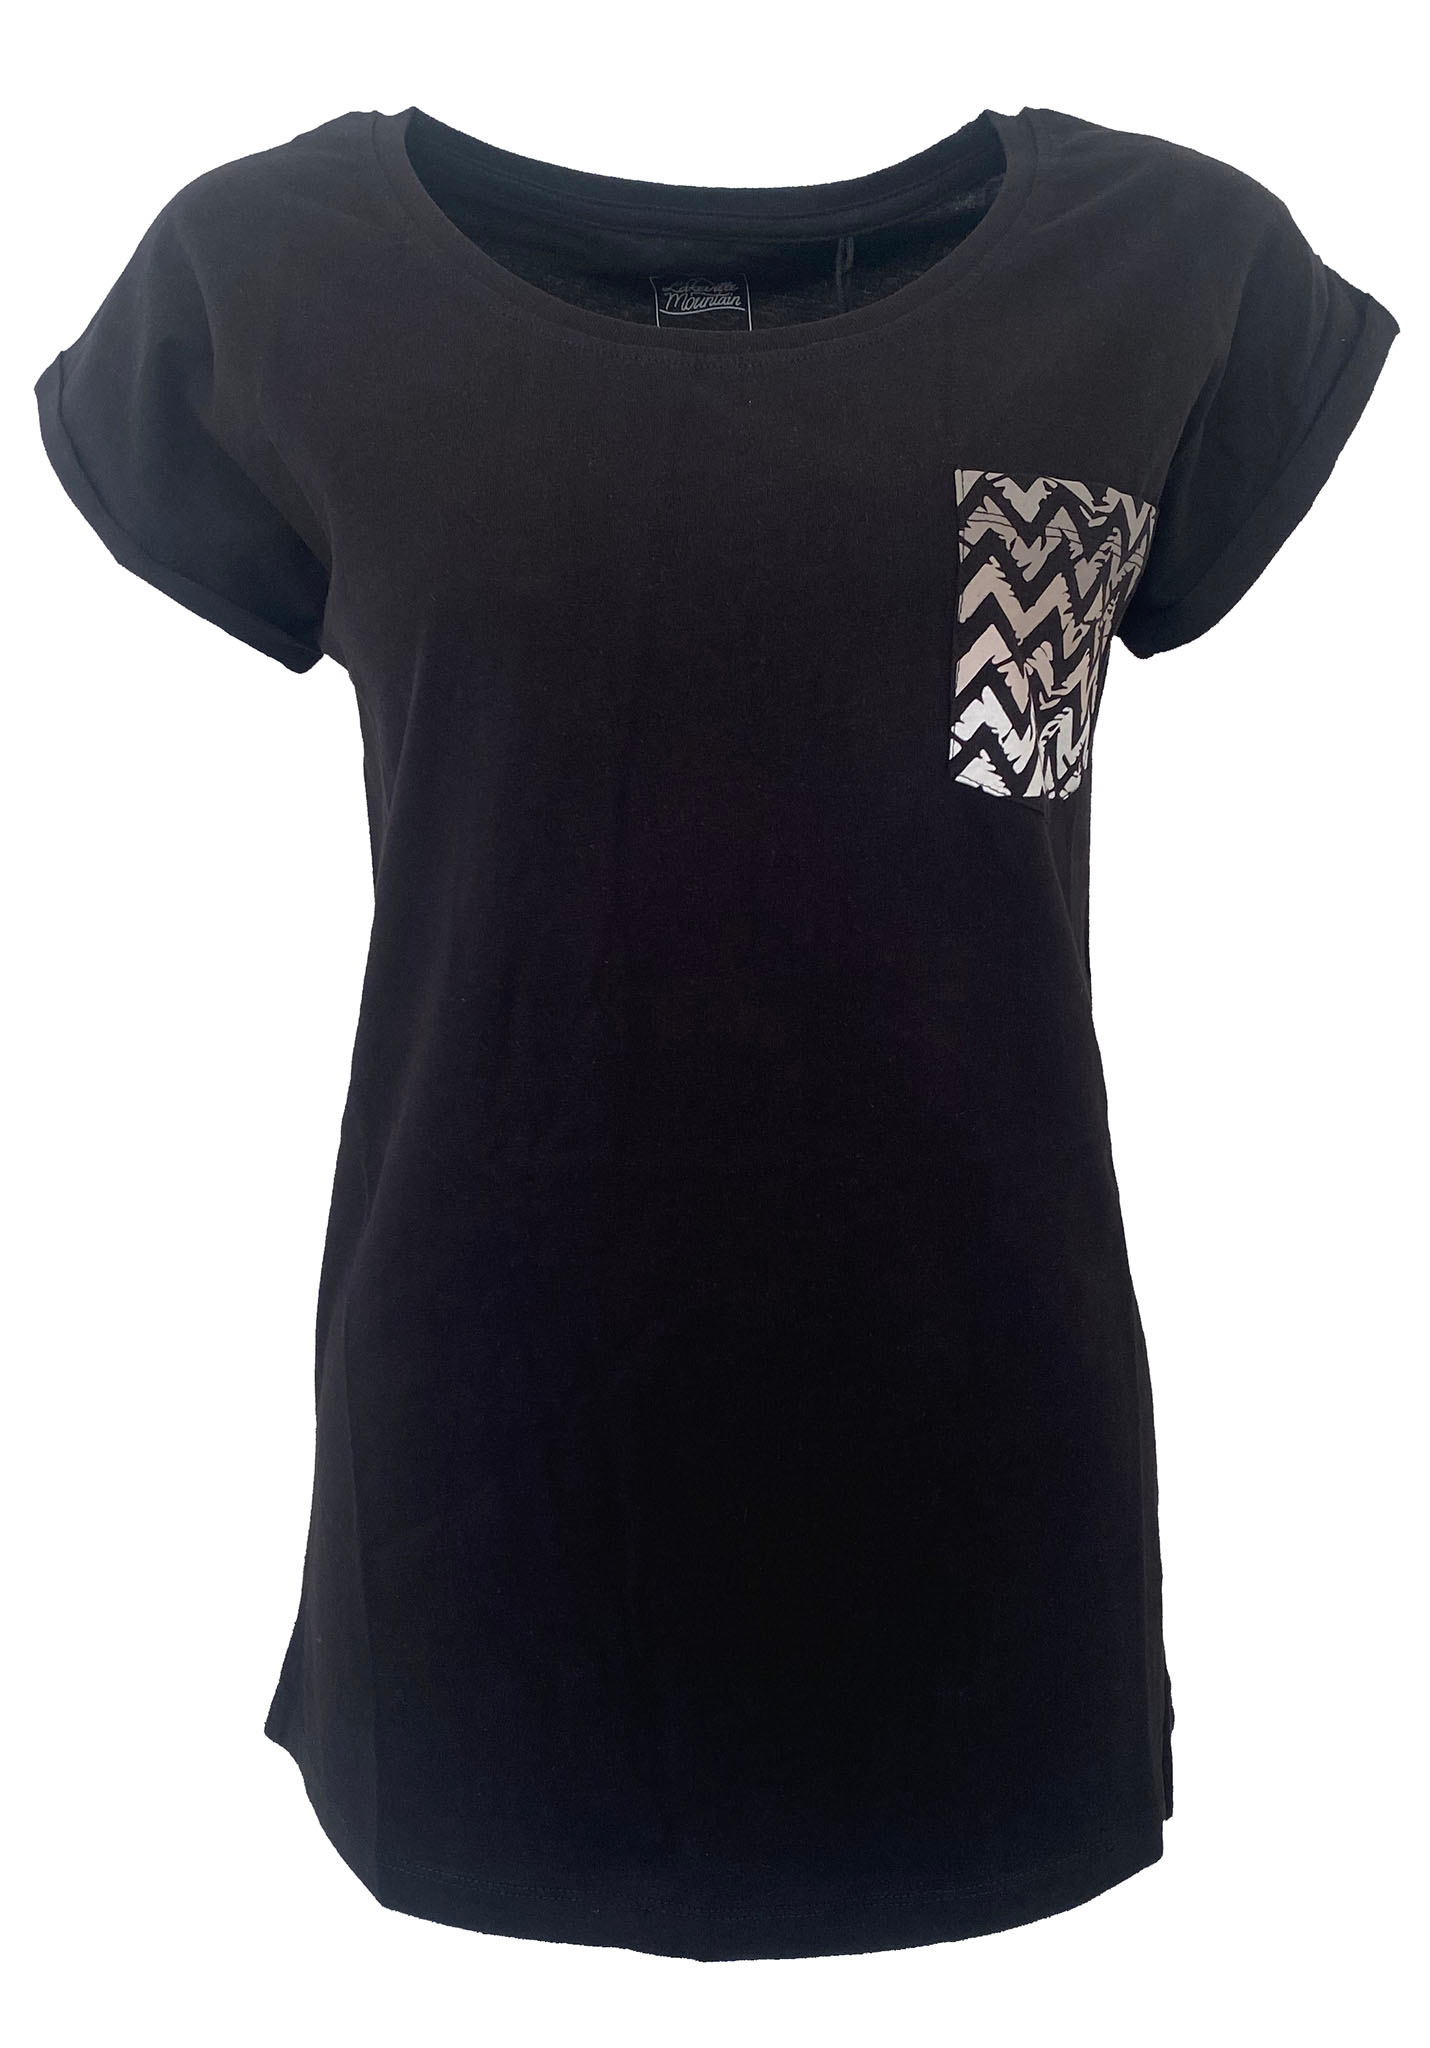 Lakeville Mountain Bonete T-Shirt black XL